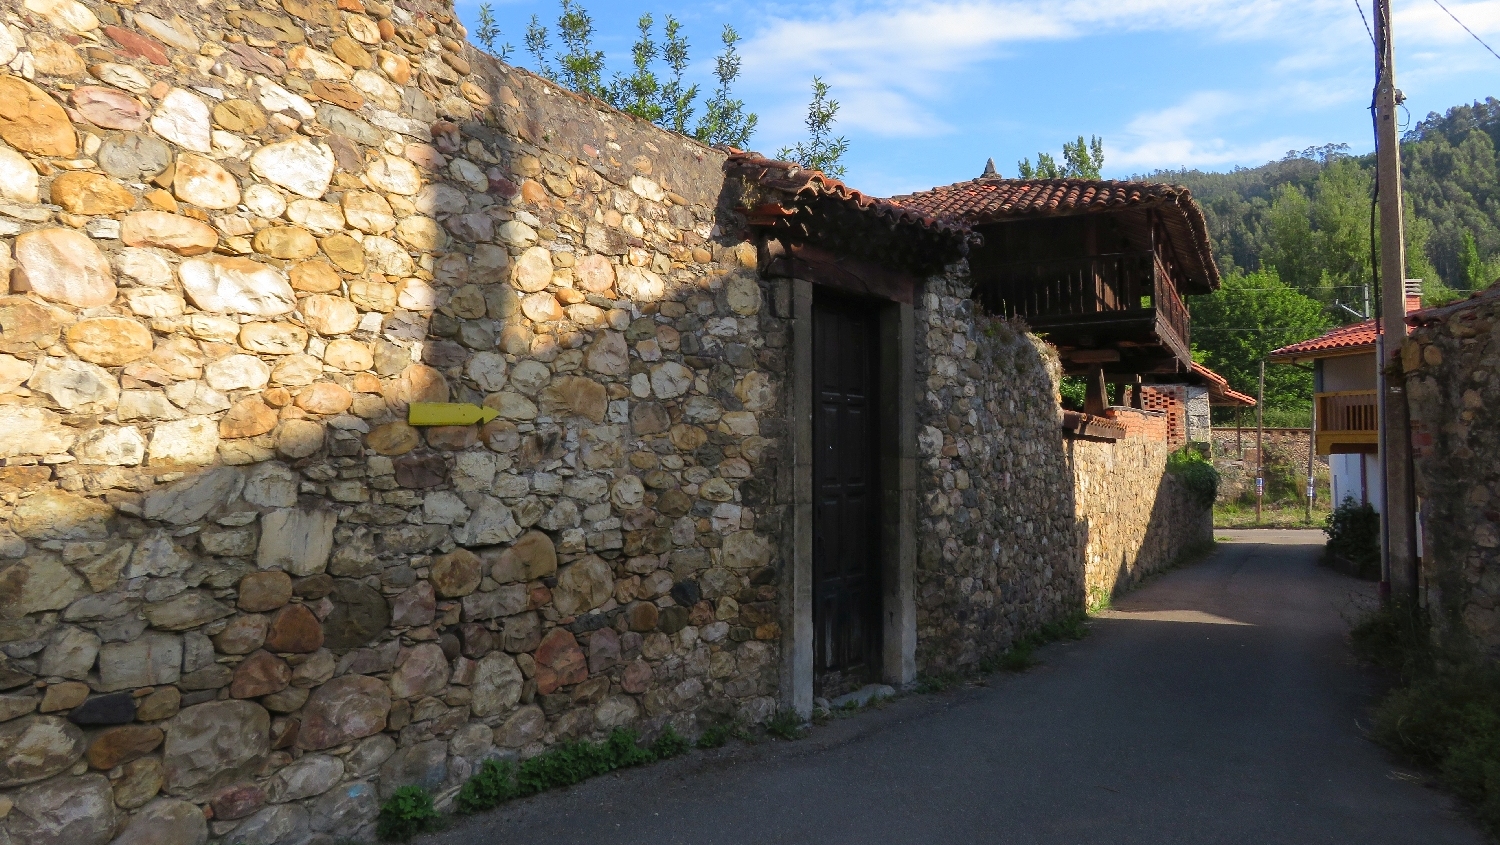 Camino Primitivo, Peñaflor, a településen a házfalakon helyezték el a nyilakat és a kagyló jelzéseket